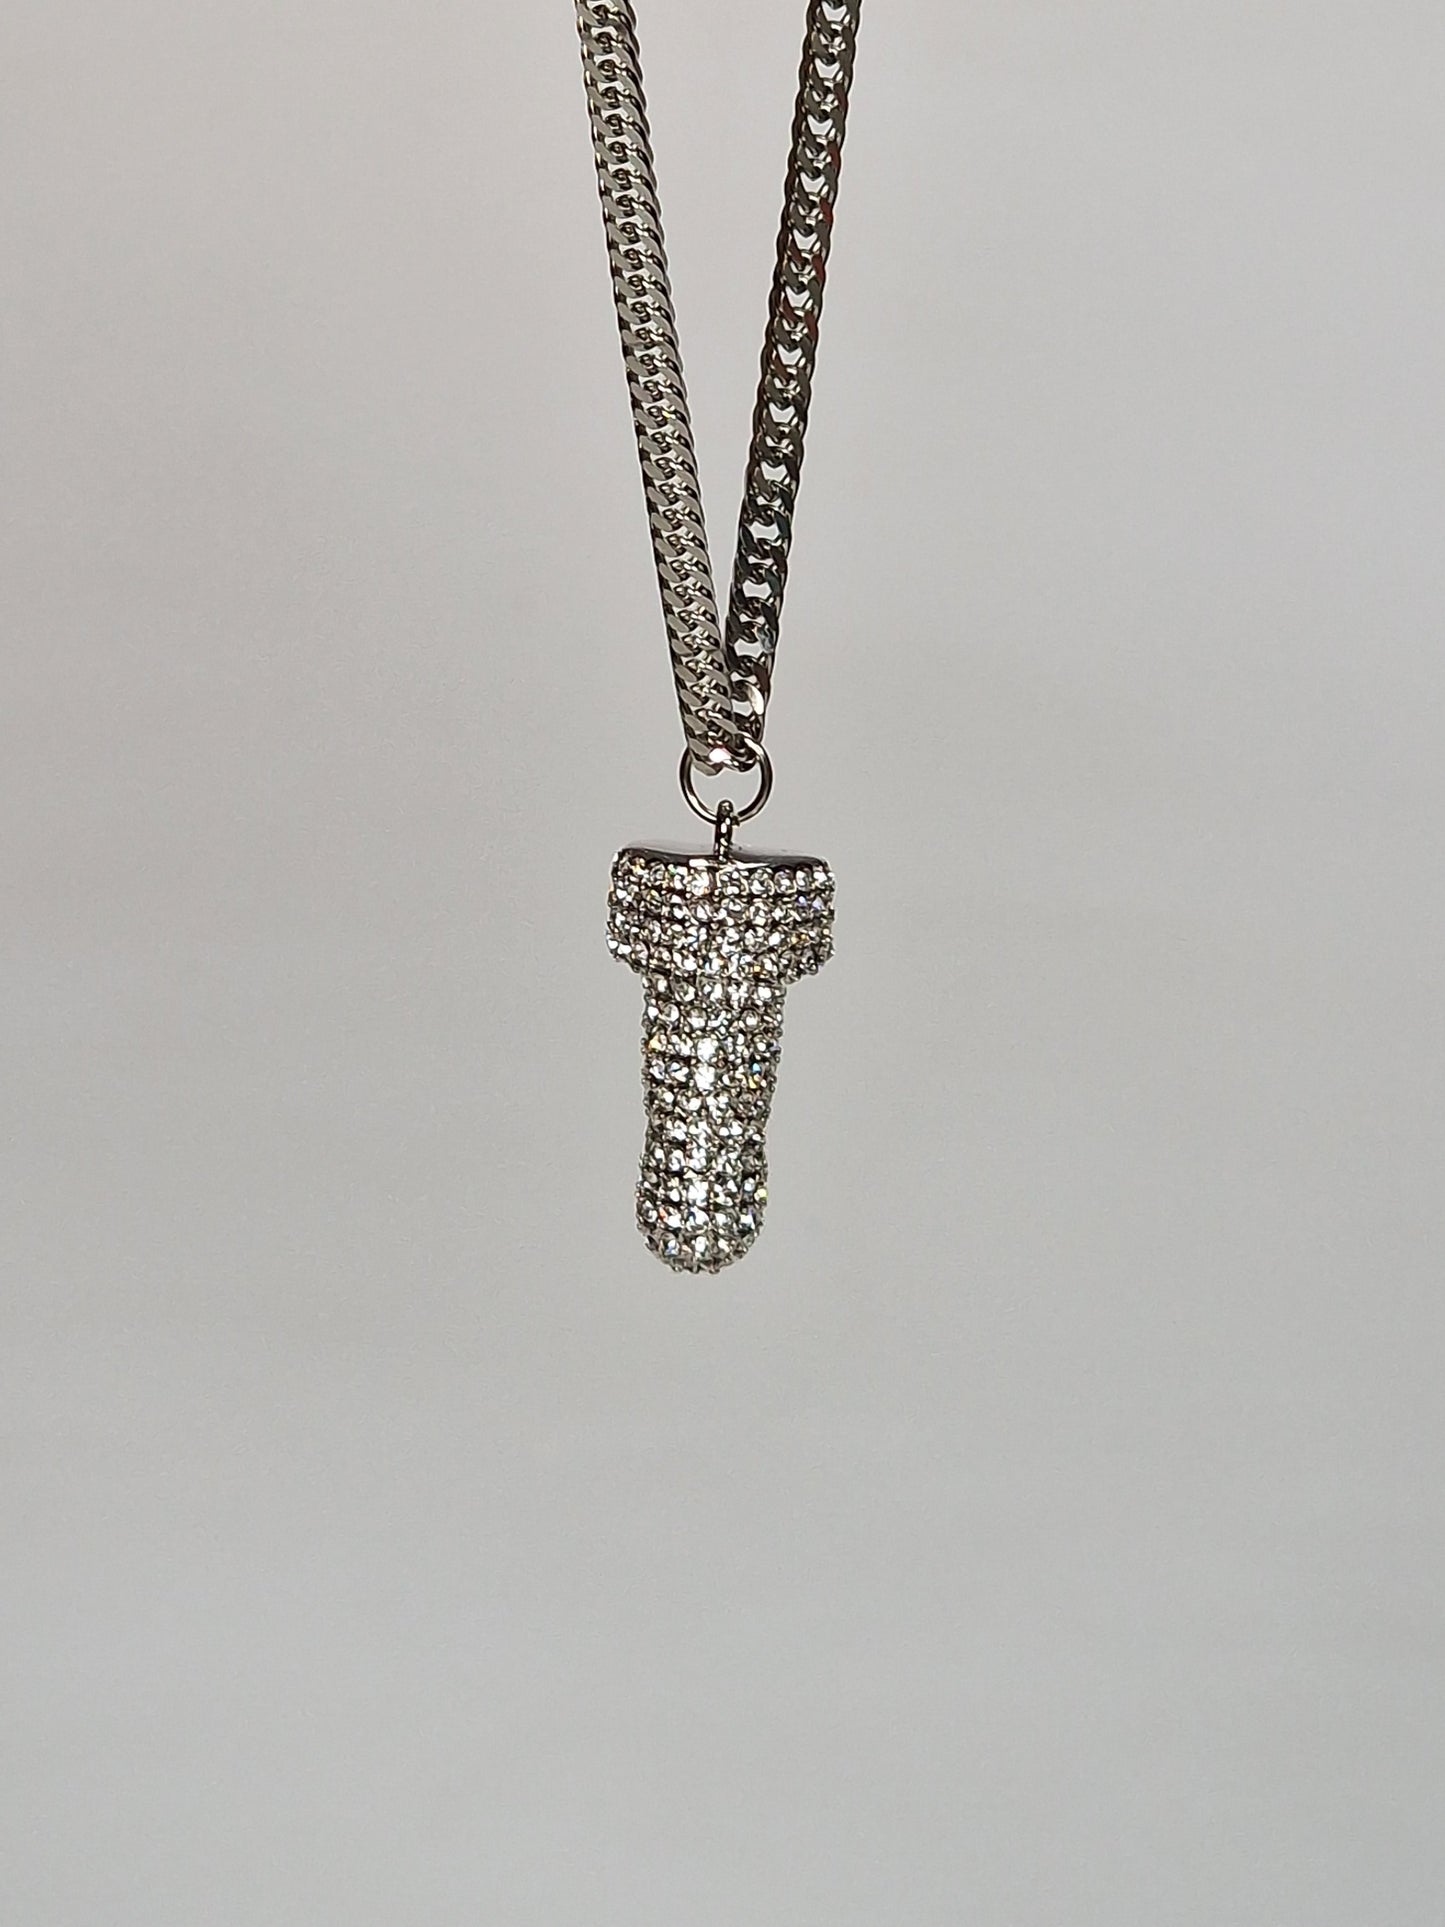 Silver metall med swarovski kristaller  - Halsband 2.5 cm hängsmycke